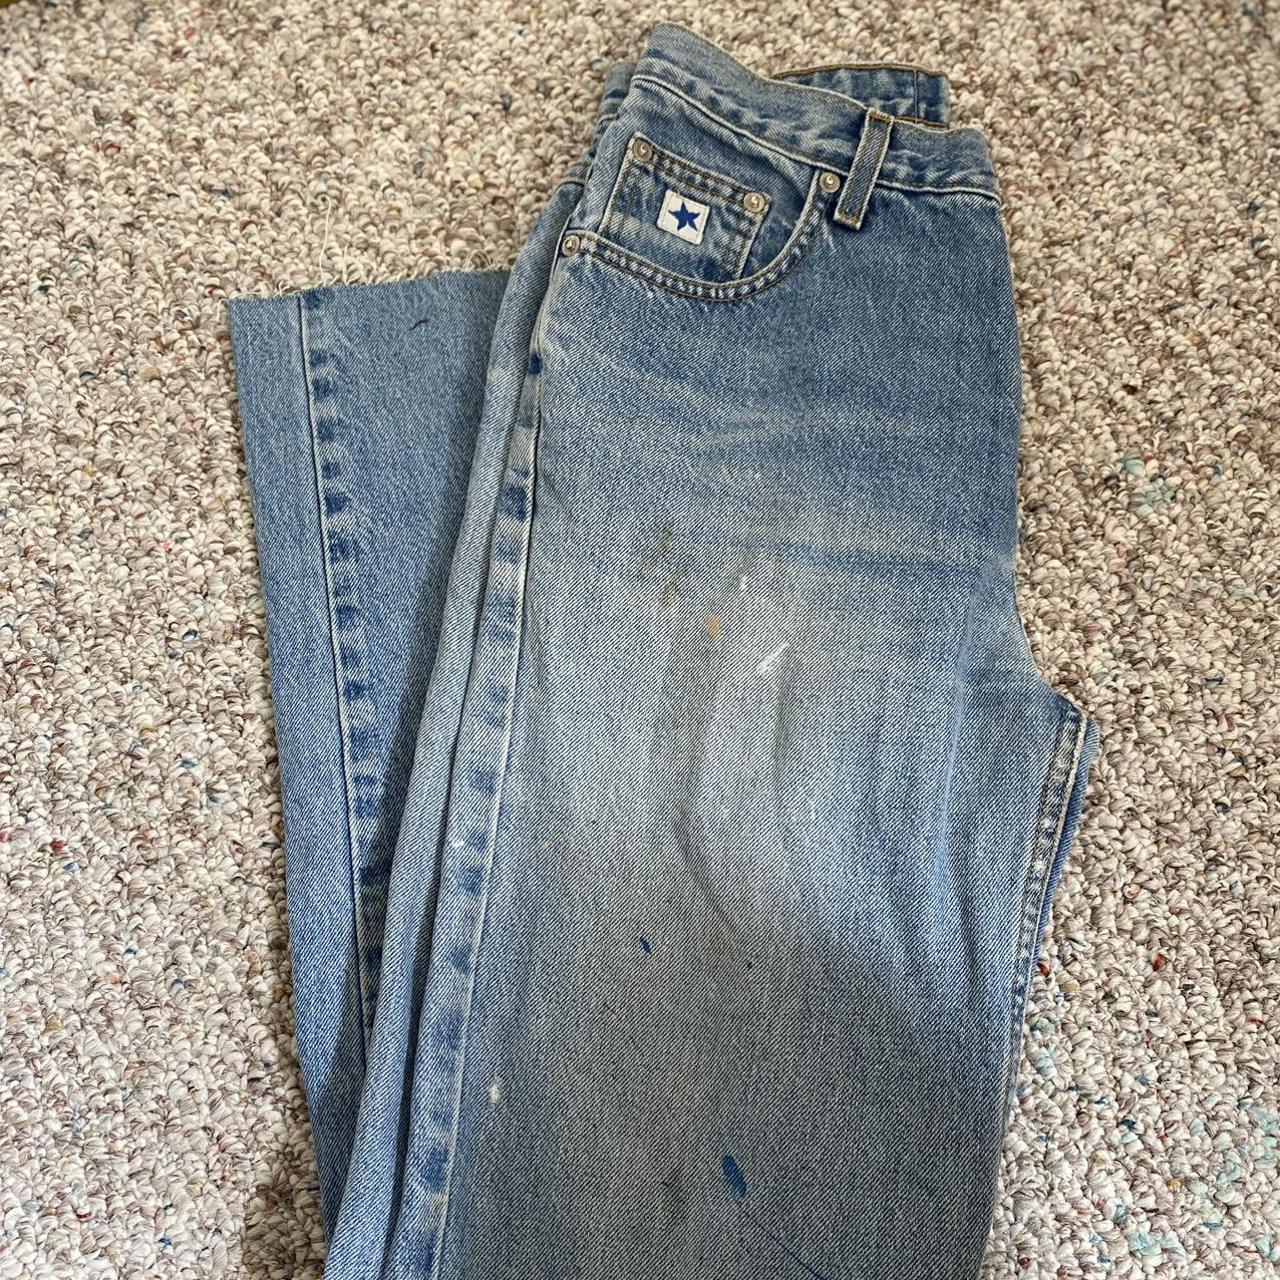 Vintage Rockies Jeans with Light Paint Spots - Depop